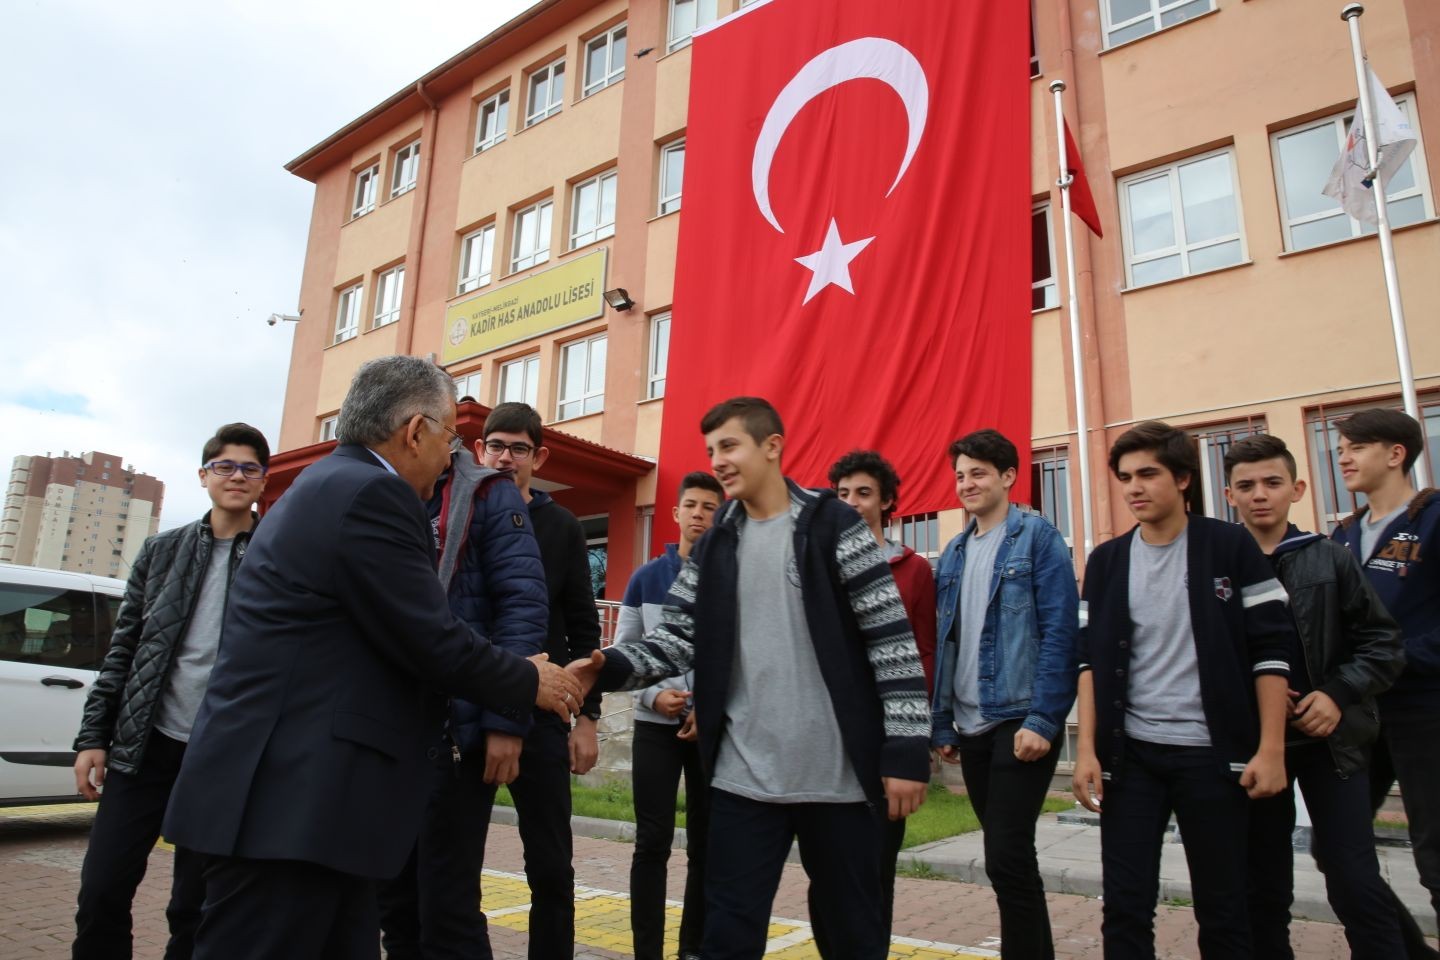 Büyükkılıç: “Türkiye’yi 2023 hedeflerine ulaştıracak olan gençlerdir”